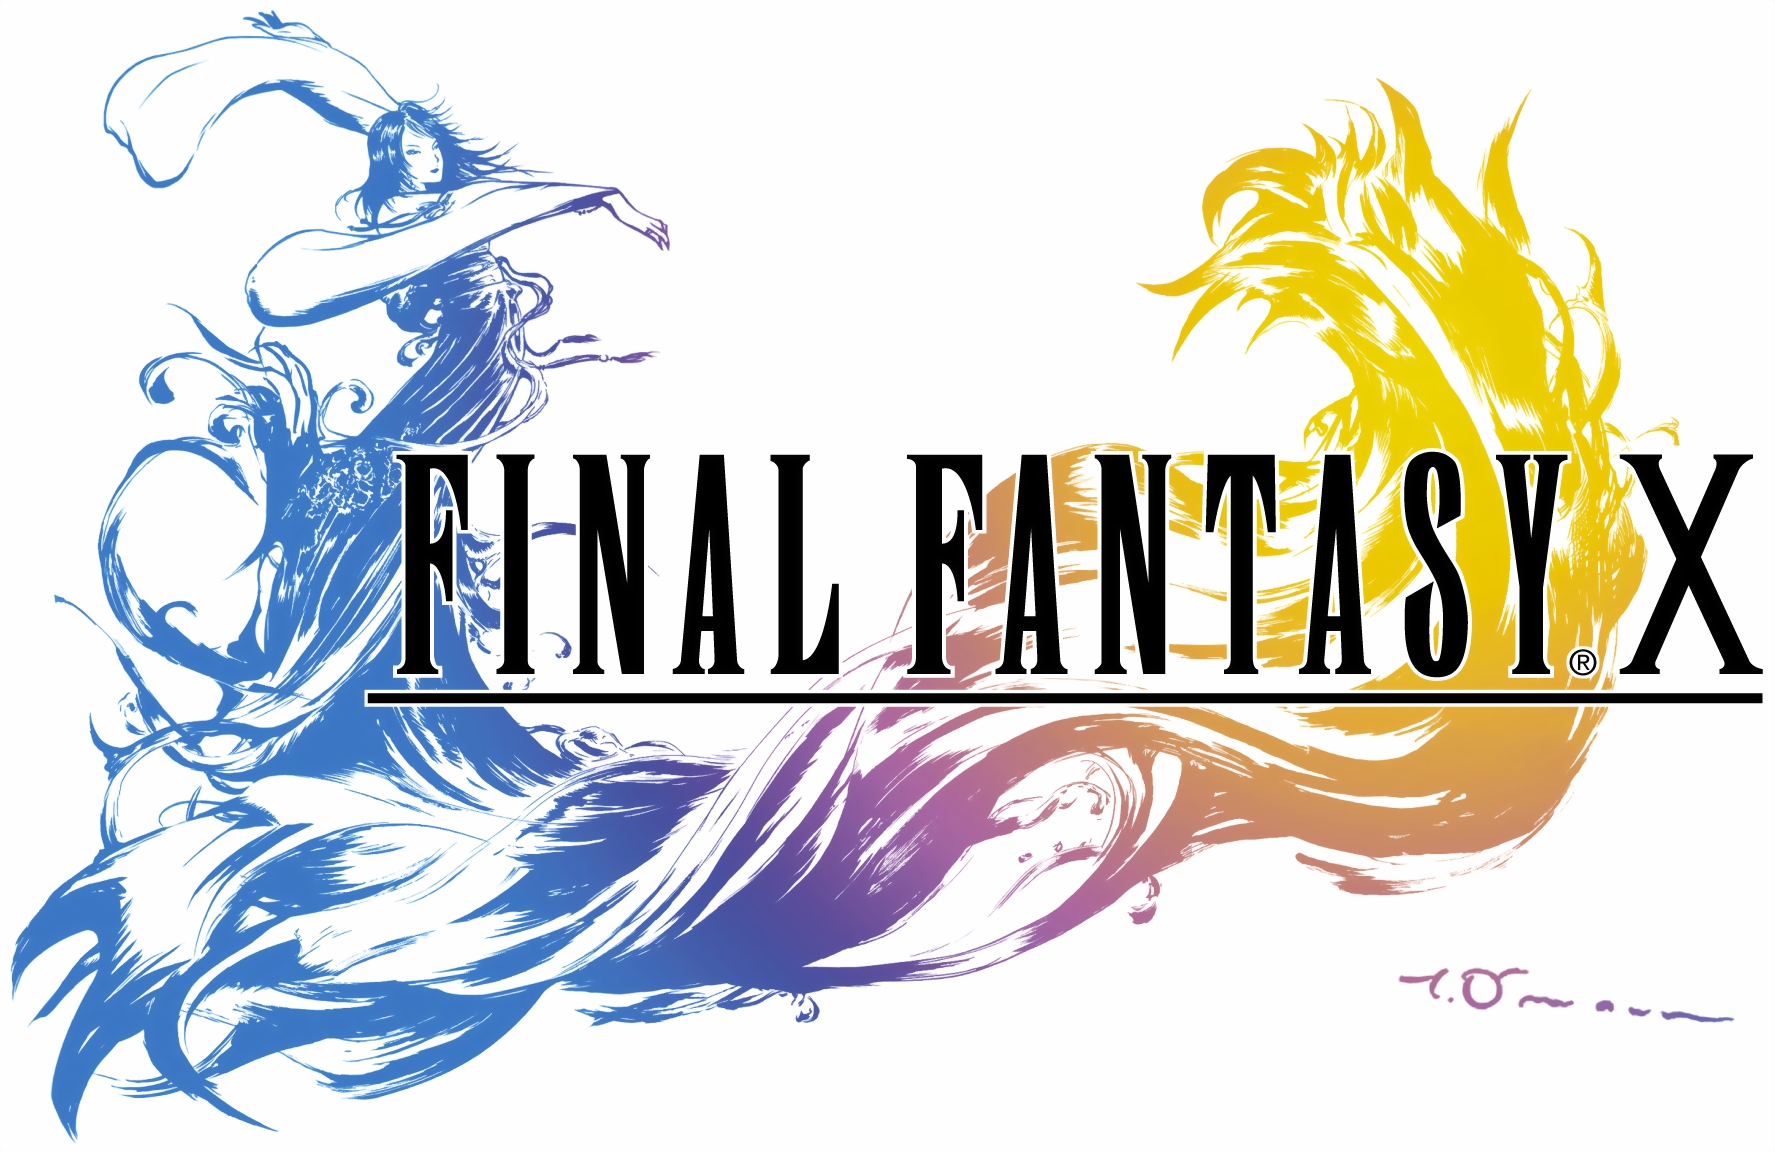 Final Fantasy X/X-2 HD Remaster – Wikipédia, a enciclopédia livre